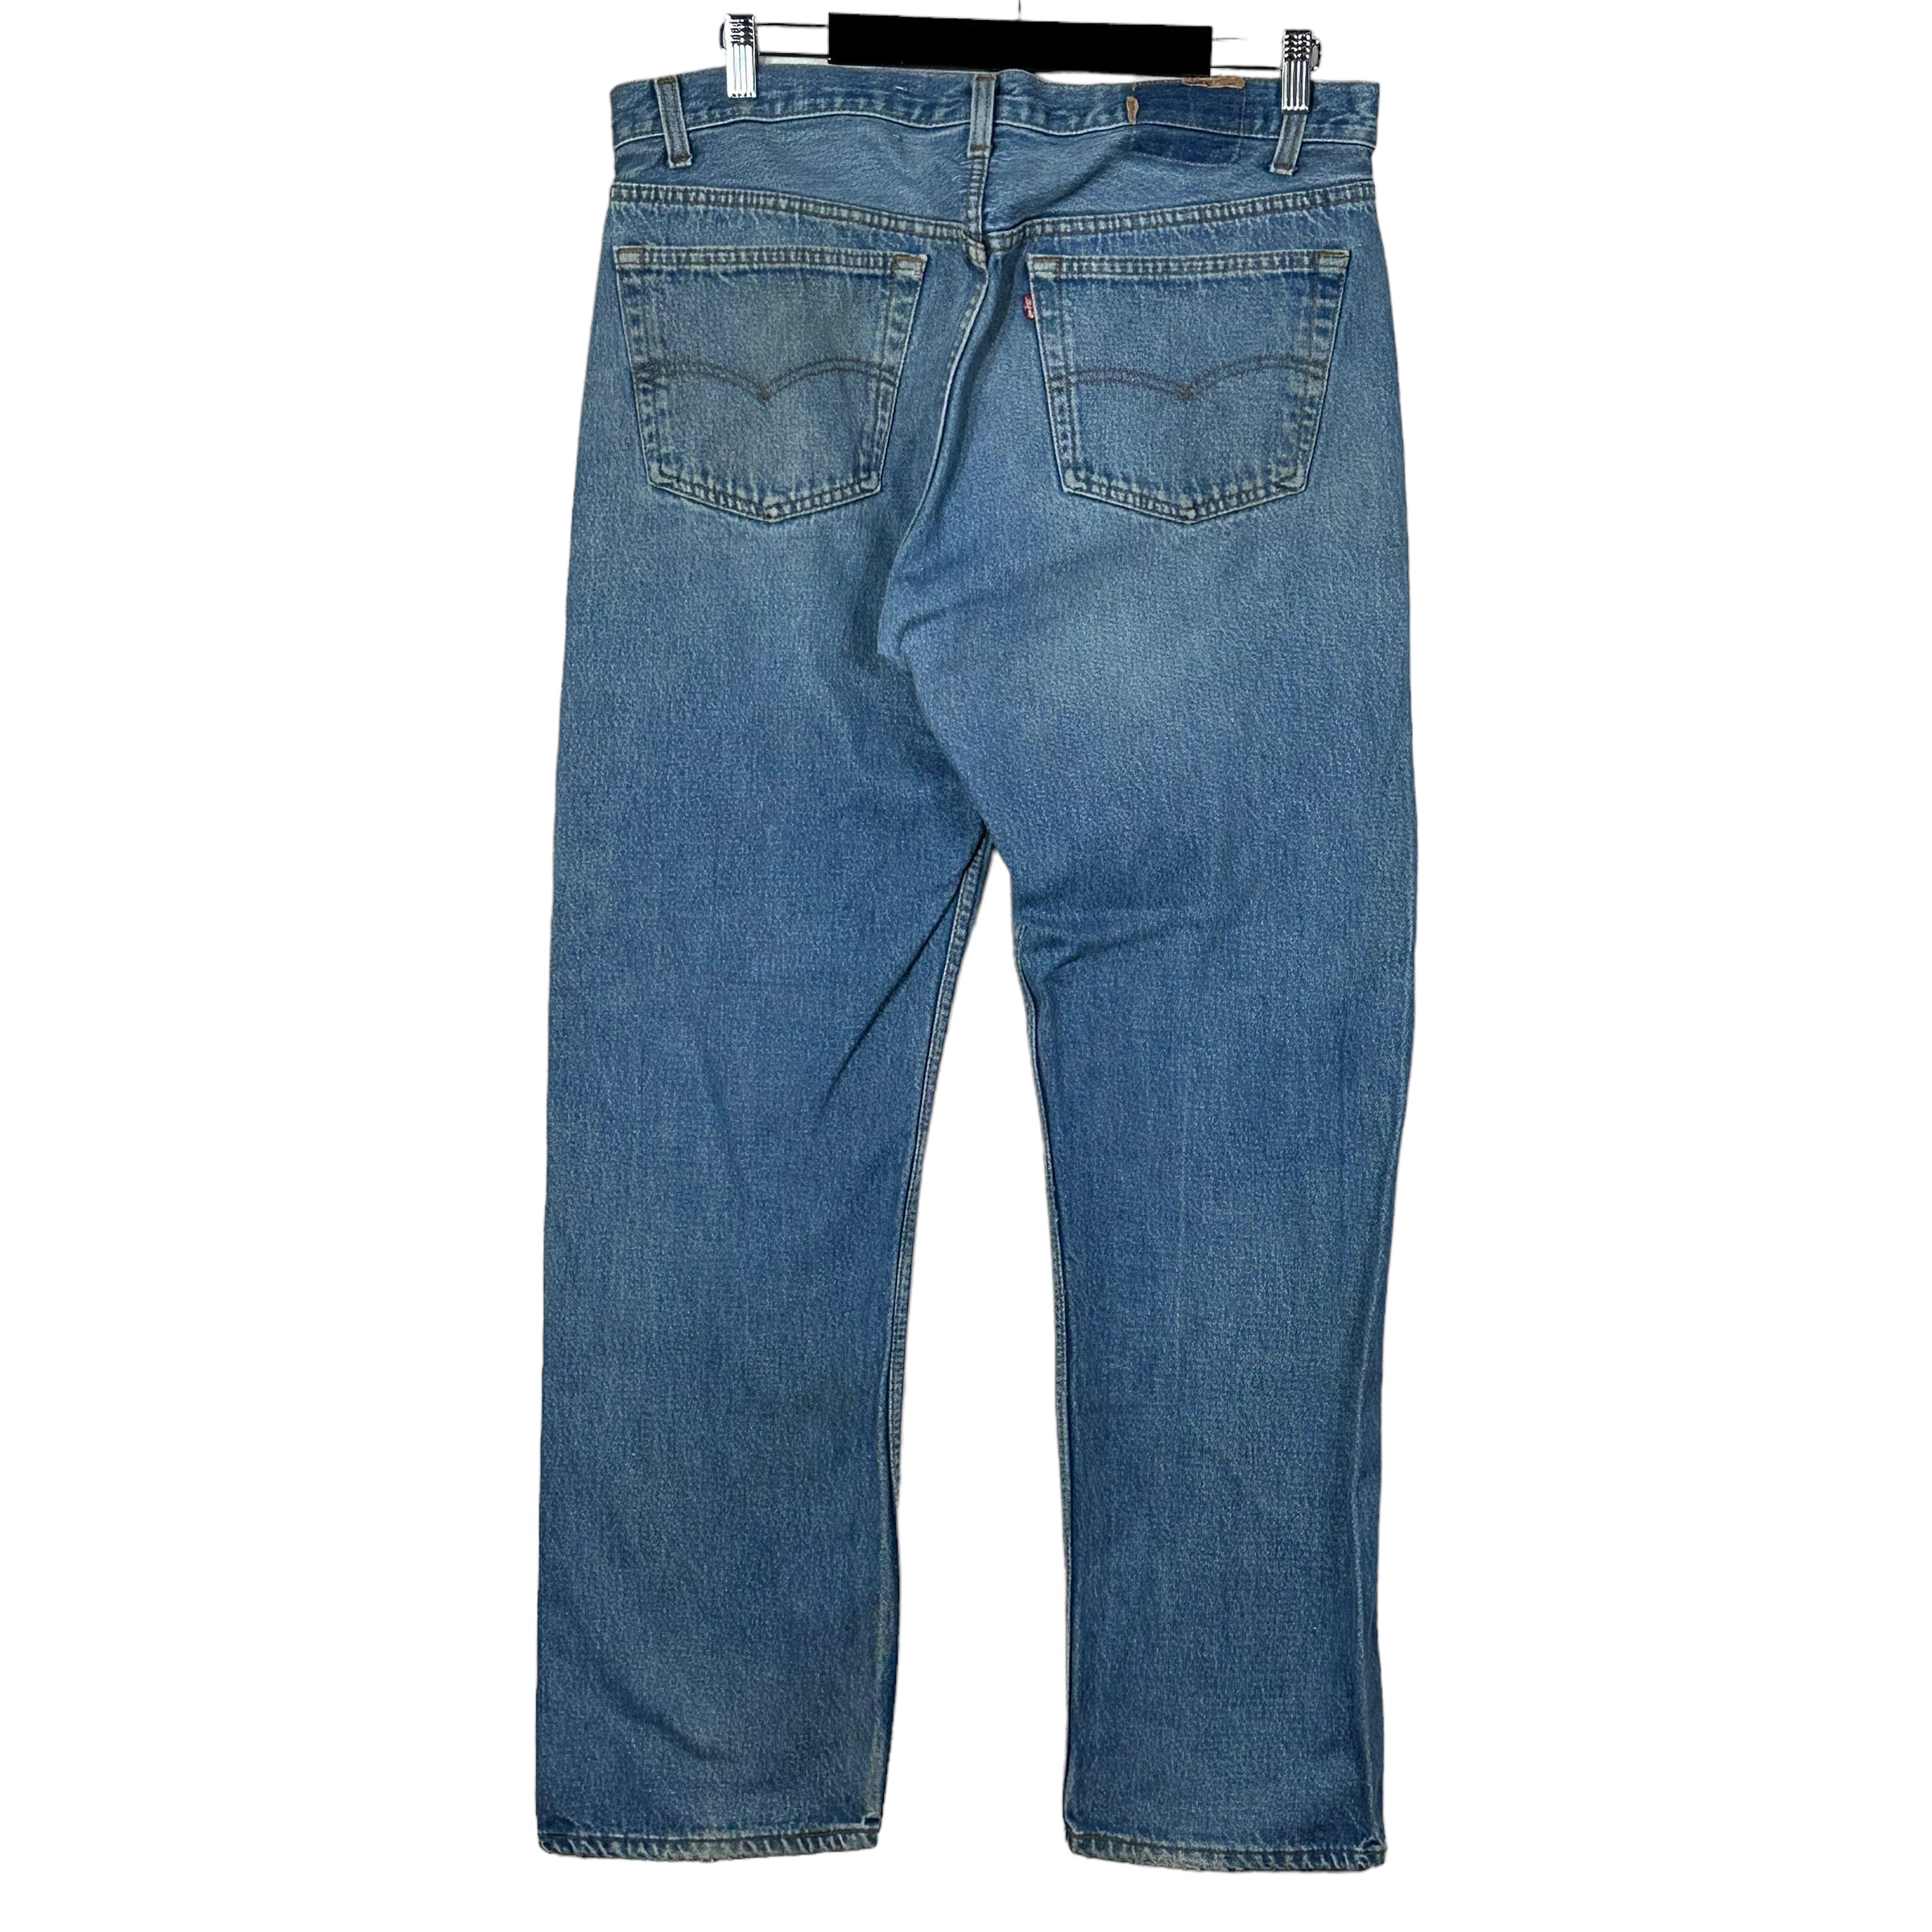 Vintage Levi's Denim Jeans 90s